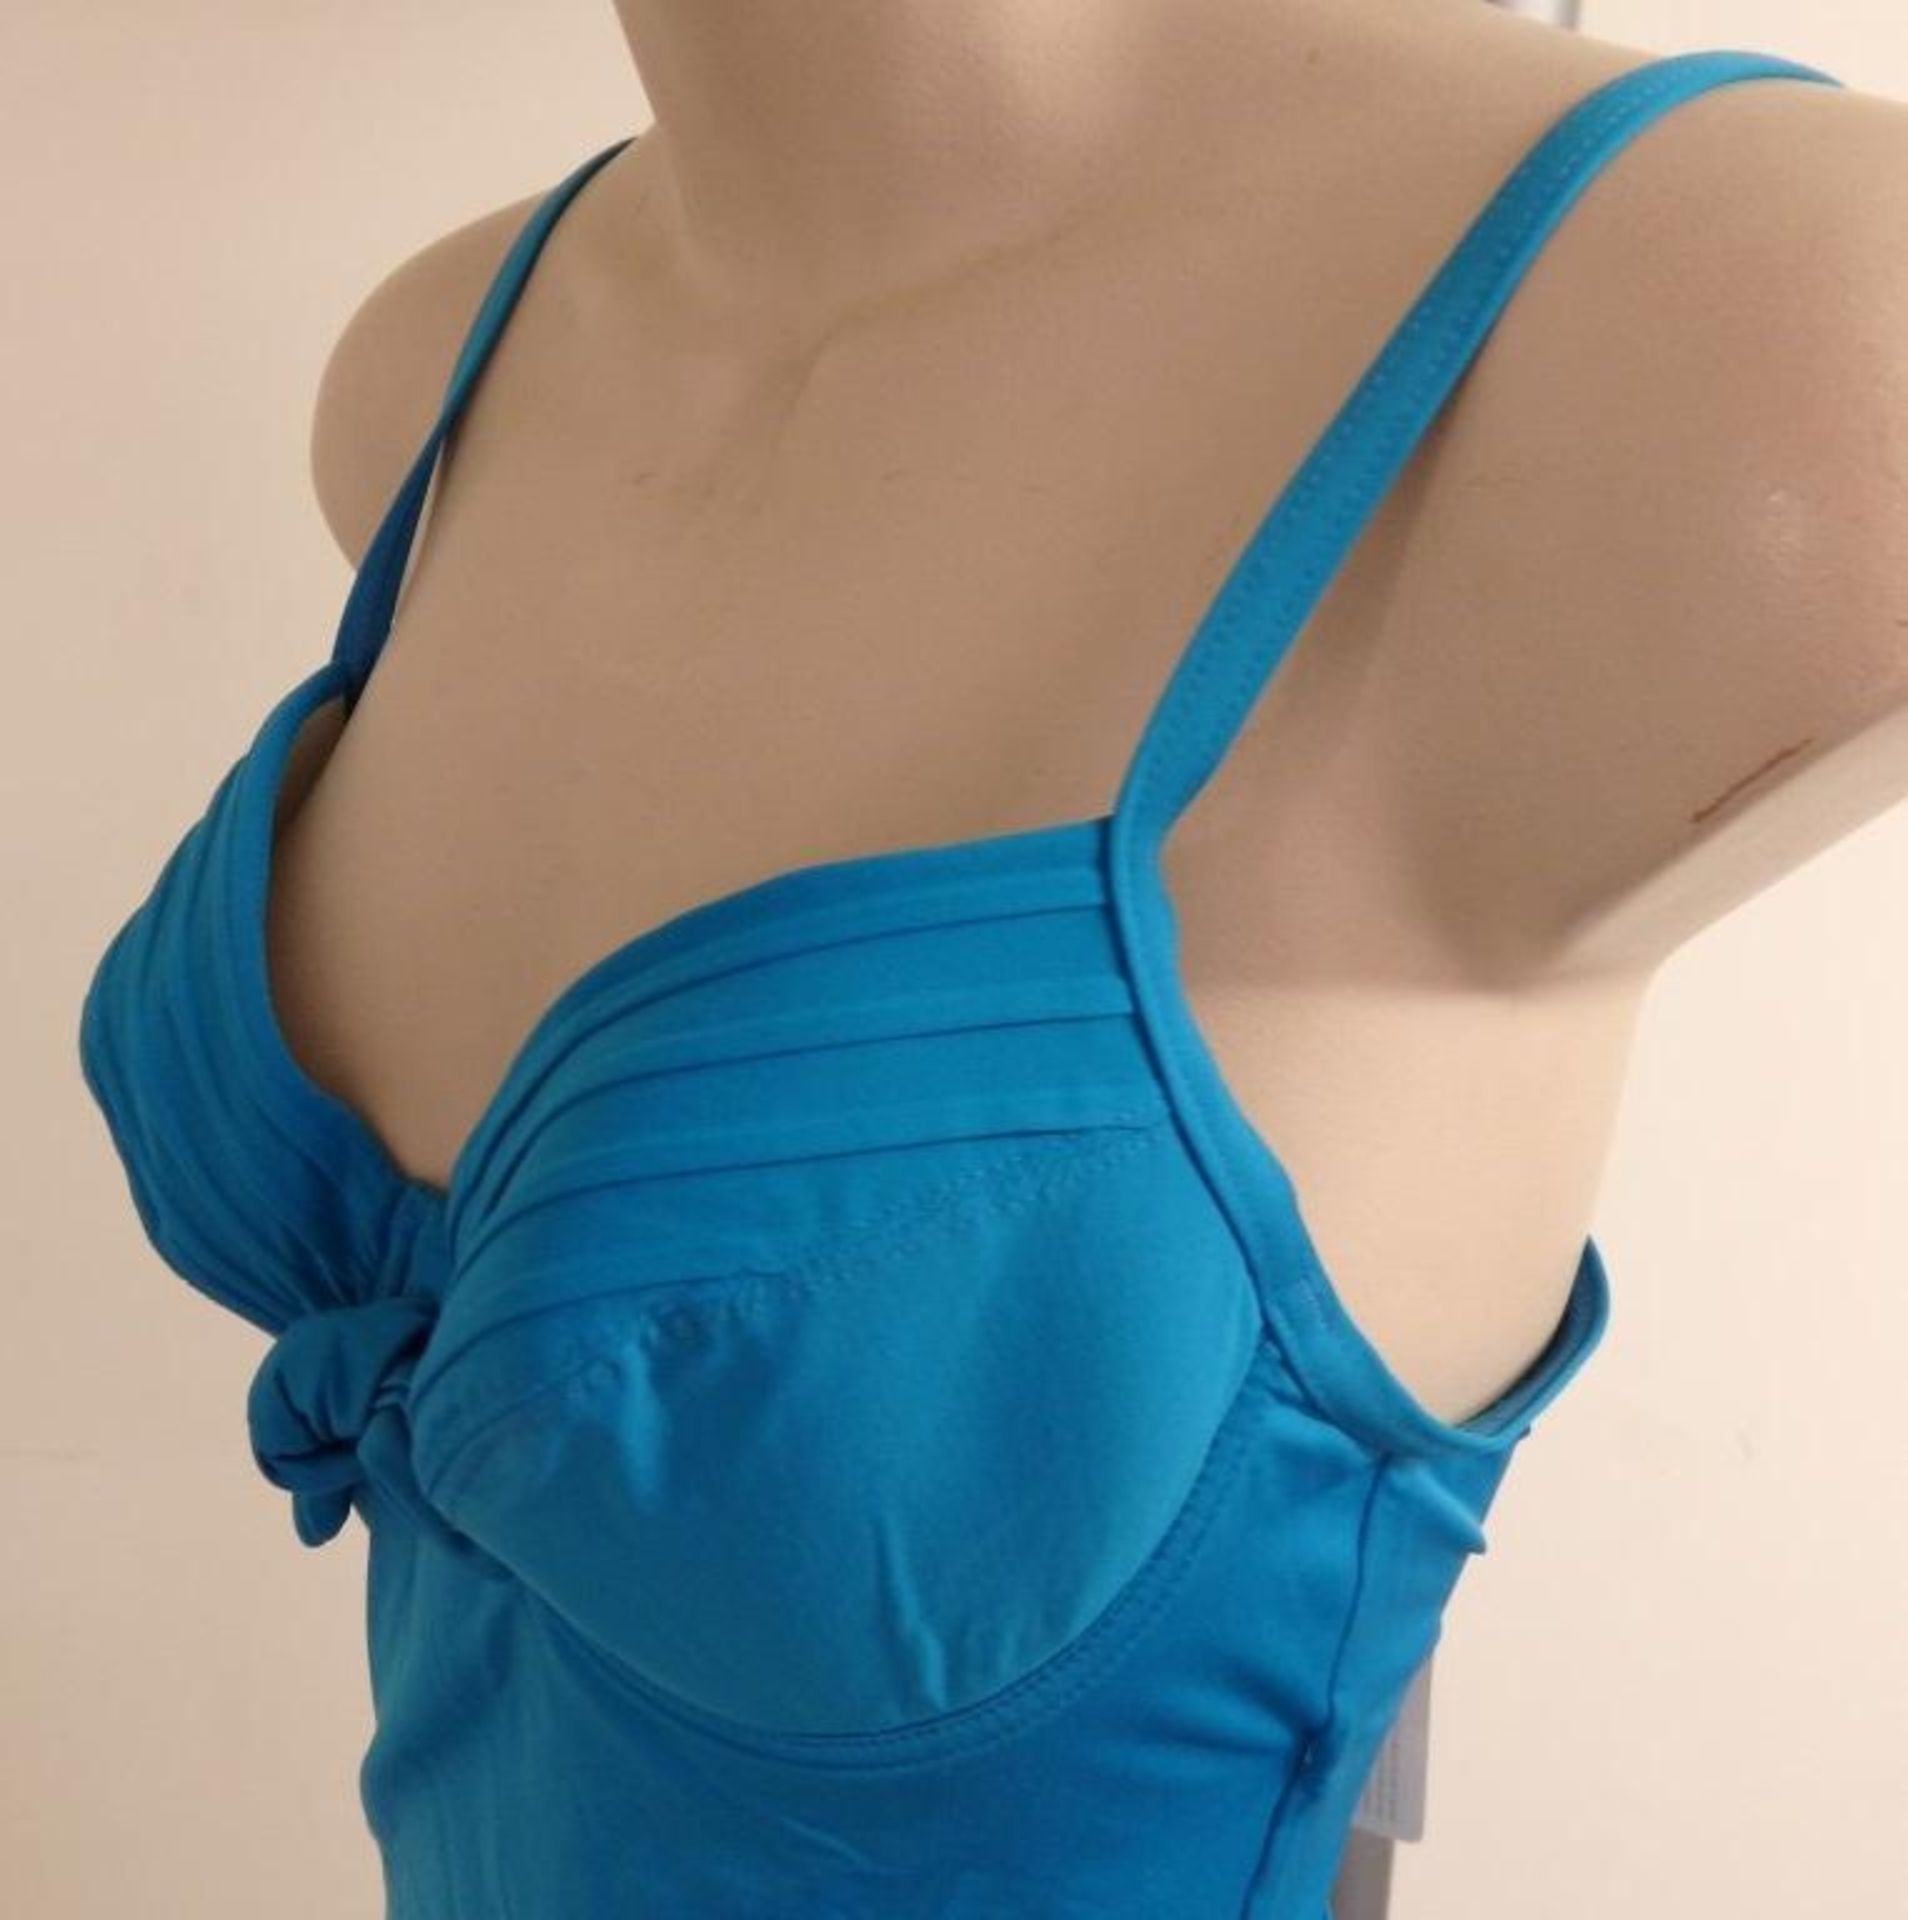 1 x Rasurel - Turquoise -Touquet balconnet Swimsuit - R20232 - Size 2C - UK 32 - Fr 85 - EU/Int 70 - Image 7 of 9